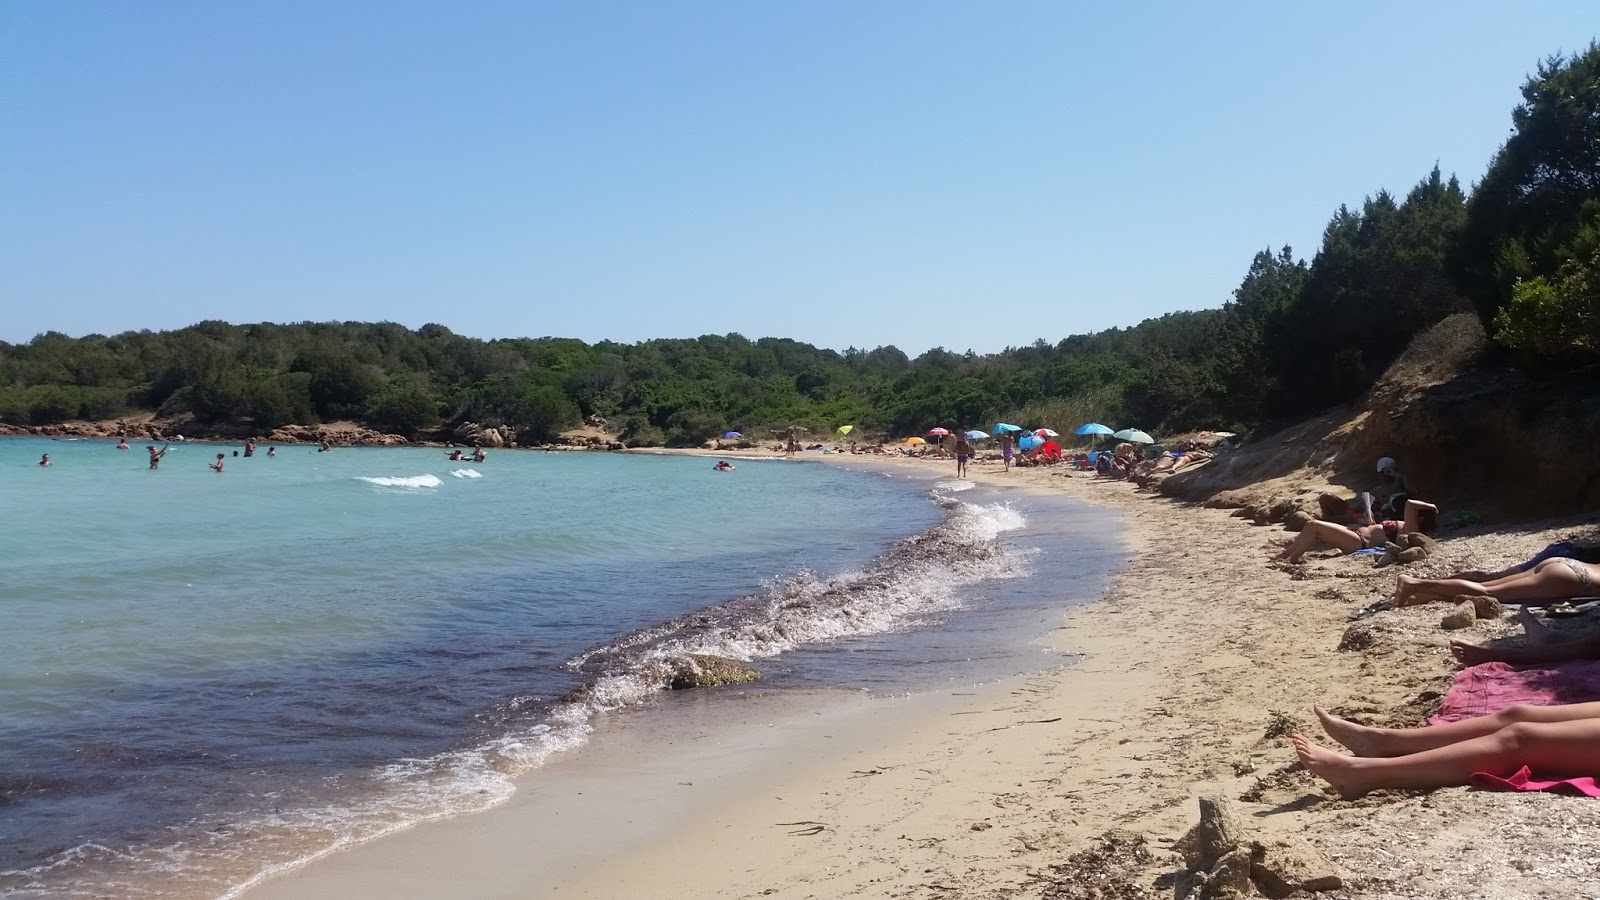 Foto de Spiaggia Le Piscine localizado em área natural